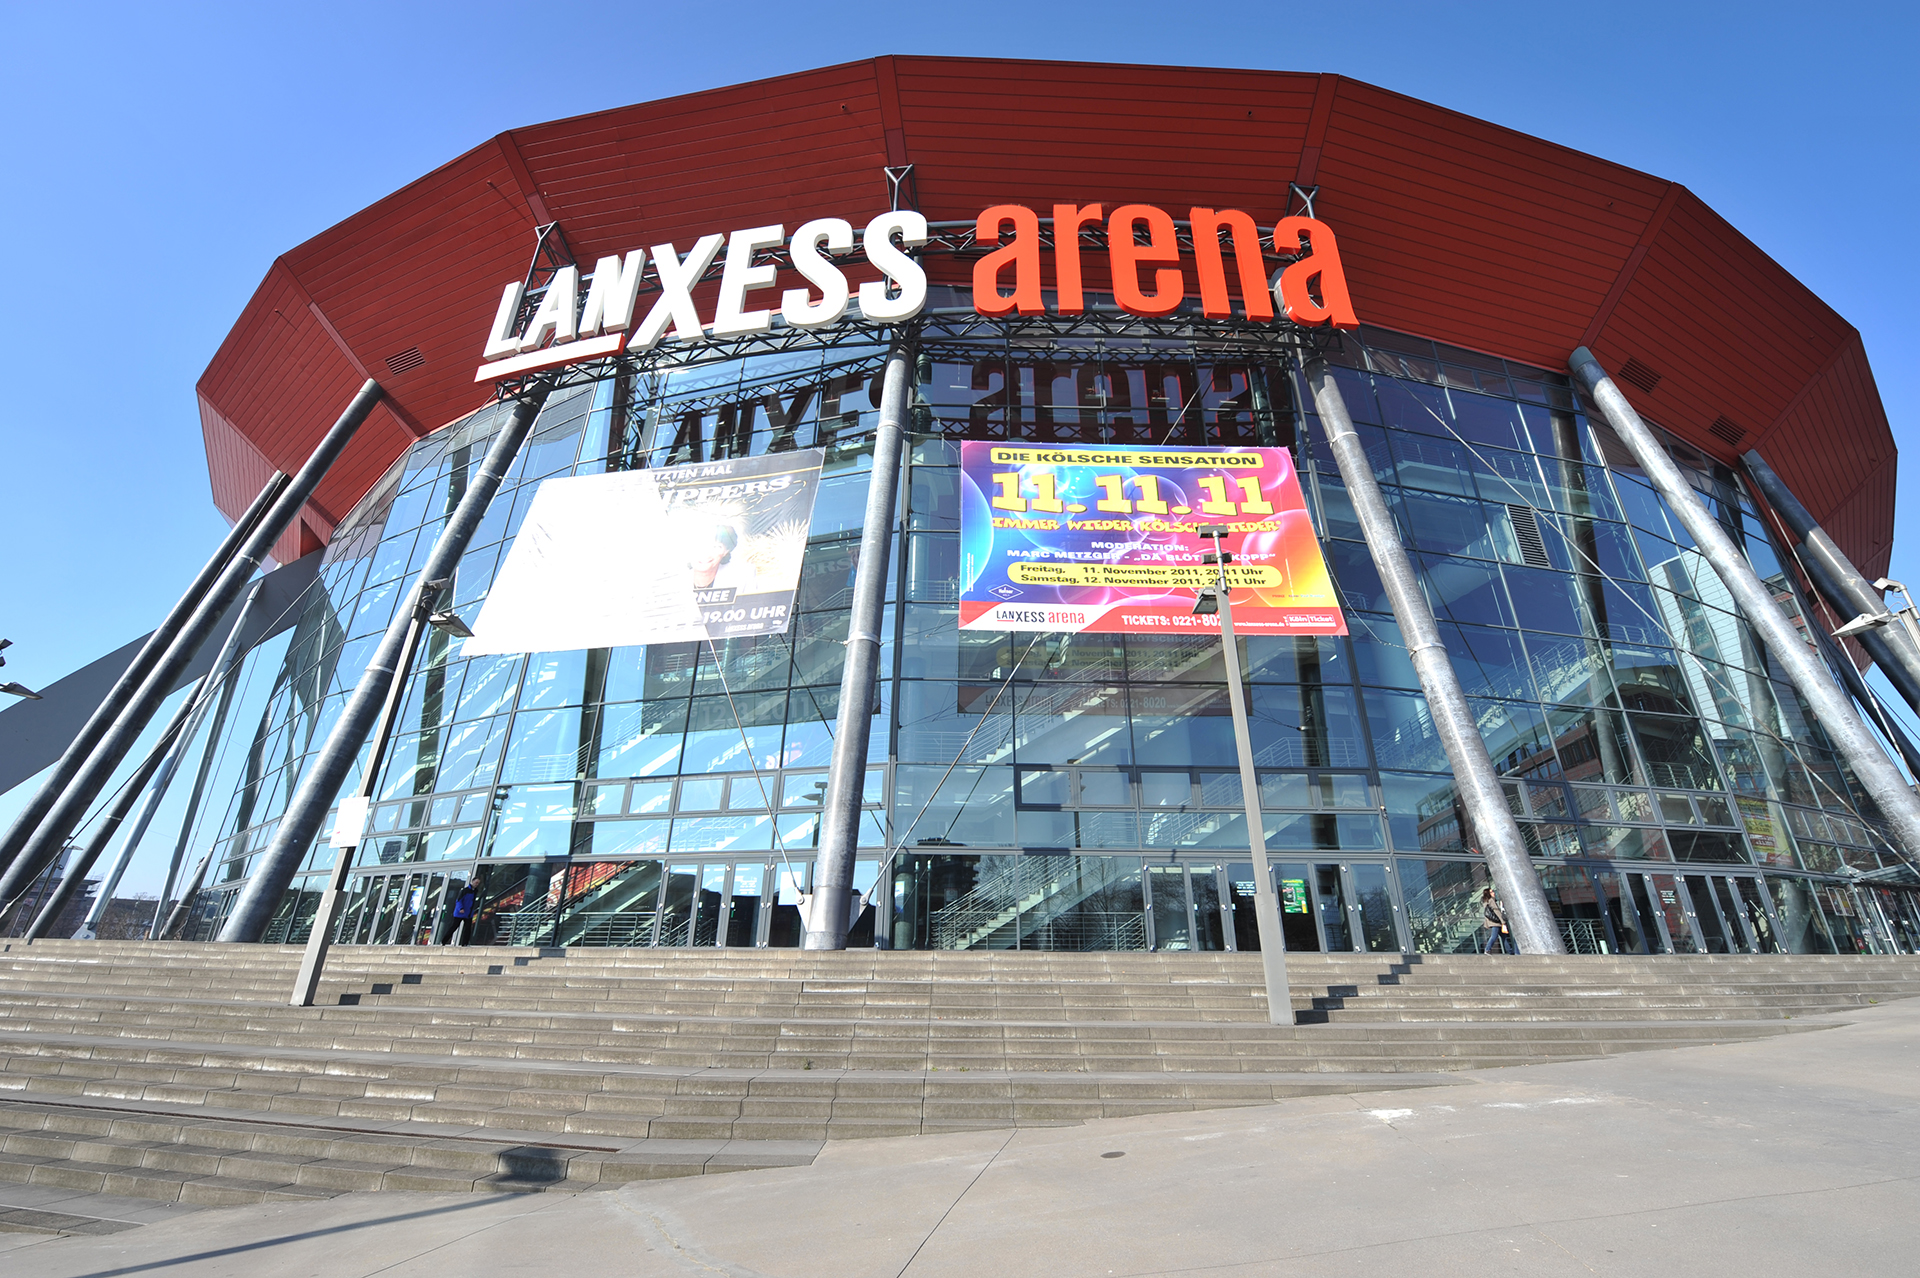 Lanxess Arena - 2min away